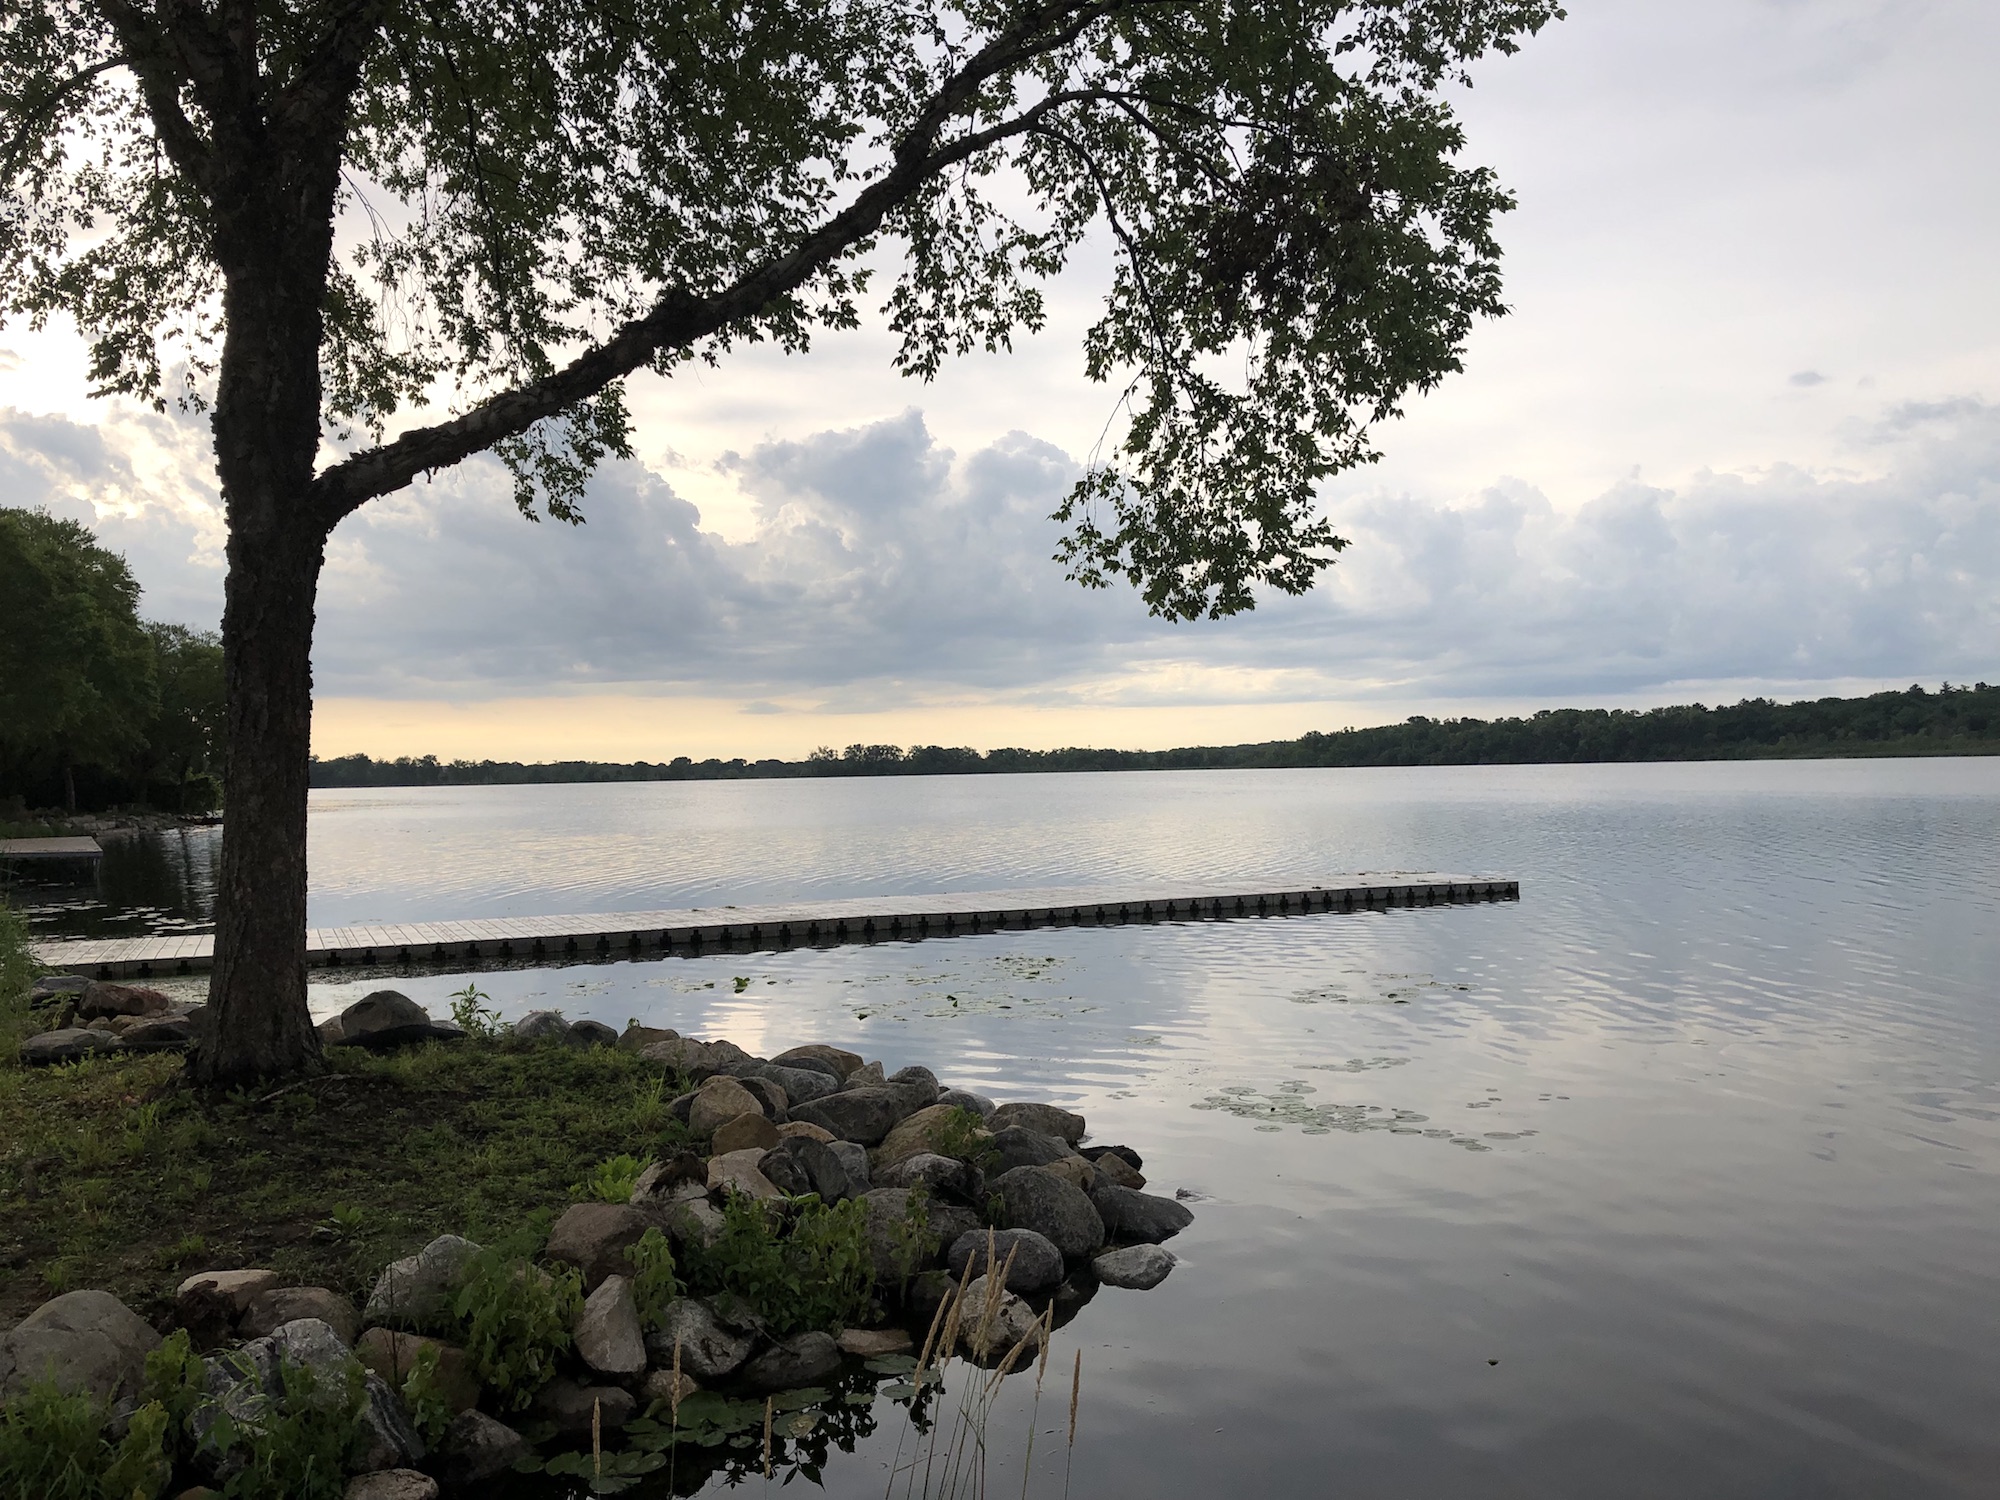 Lake Wingra on July 1, 2019.